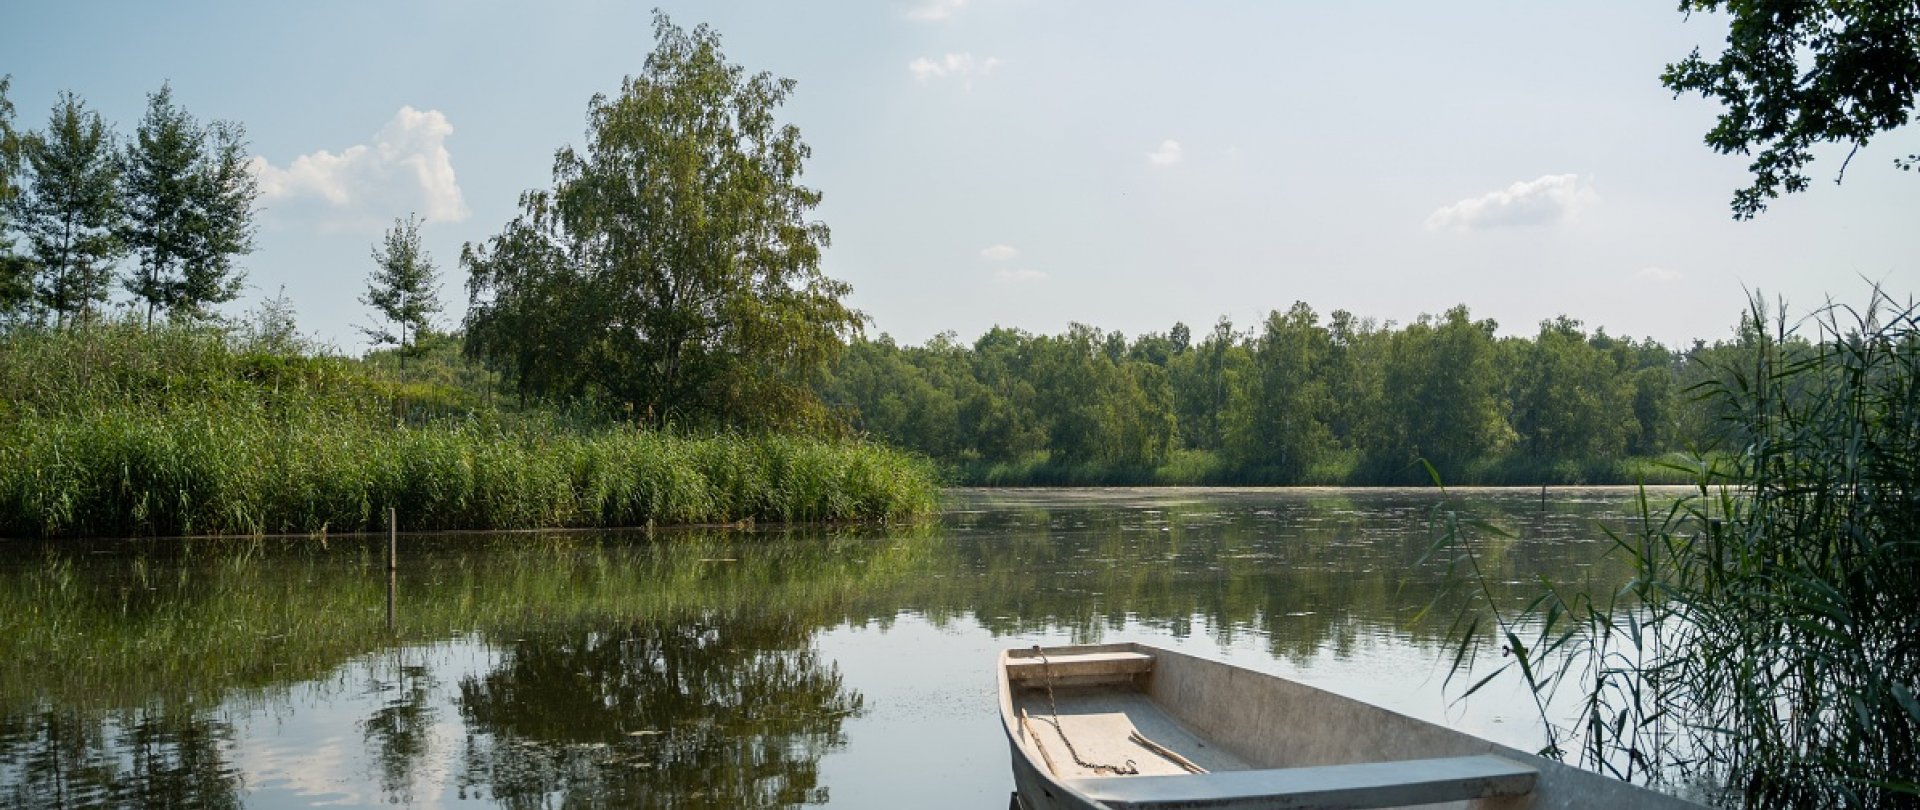 Jezioro koło Poznania. Gdzie warto się wybrać?